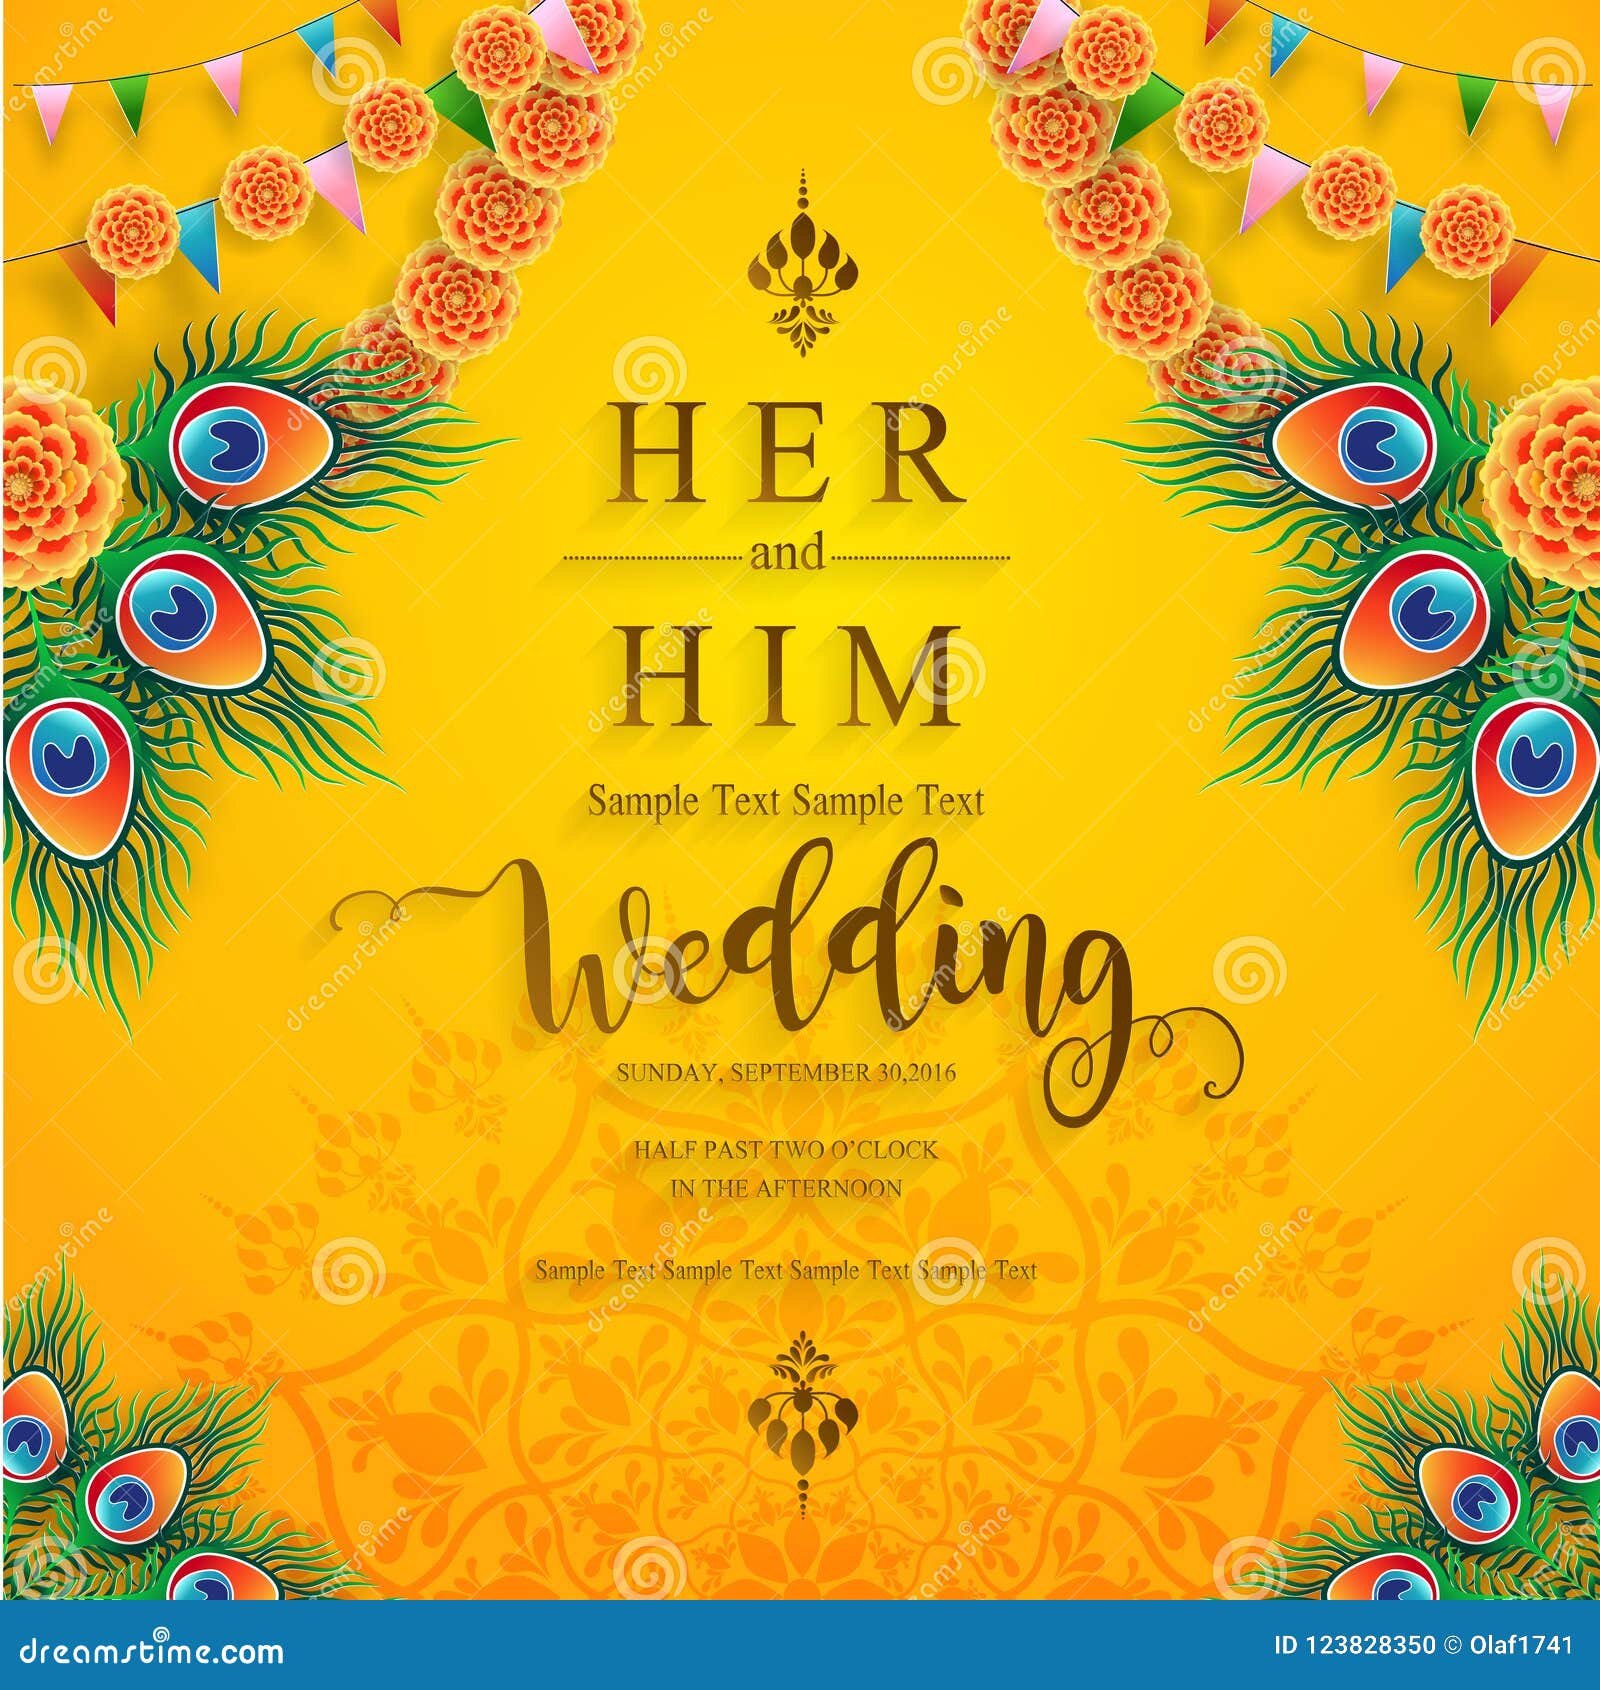 Thiệp cưới Ấn Độ hiện đại và sang trọng sẽ khiến cuộc cưới của bạn trở nên đặc biệt hơn bao giờ hết. Với các chi tiết chạm khắc tinh xảo và màu sắc độc đáo, thiệp cưới này sẽ làm bạn và khách mời của bạn thích thú. Xem hình ảnh để cảm nhận sự độc đáo và tinh tế của thiệp cưới này.